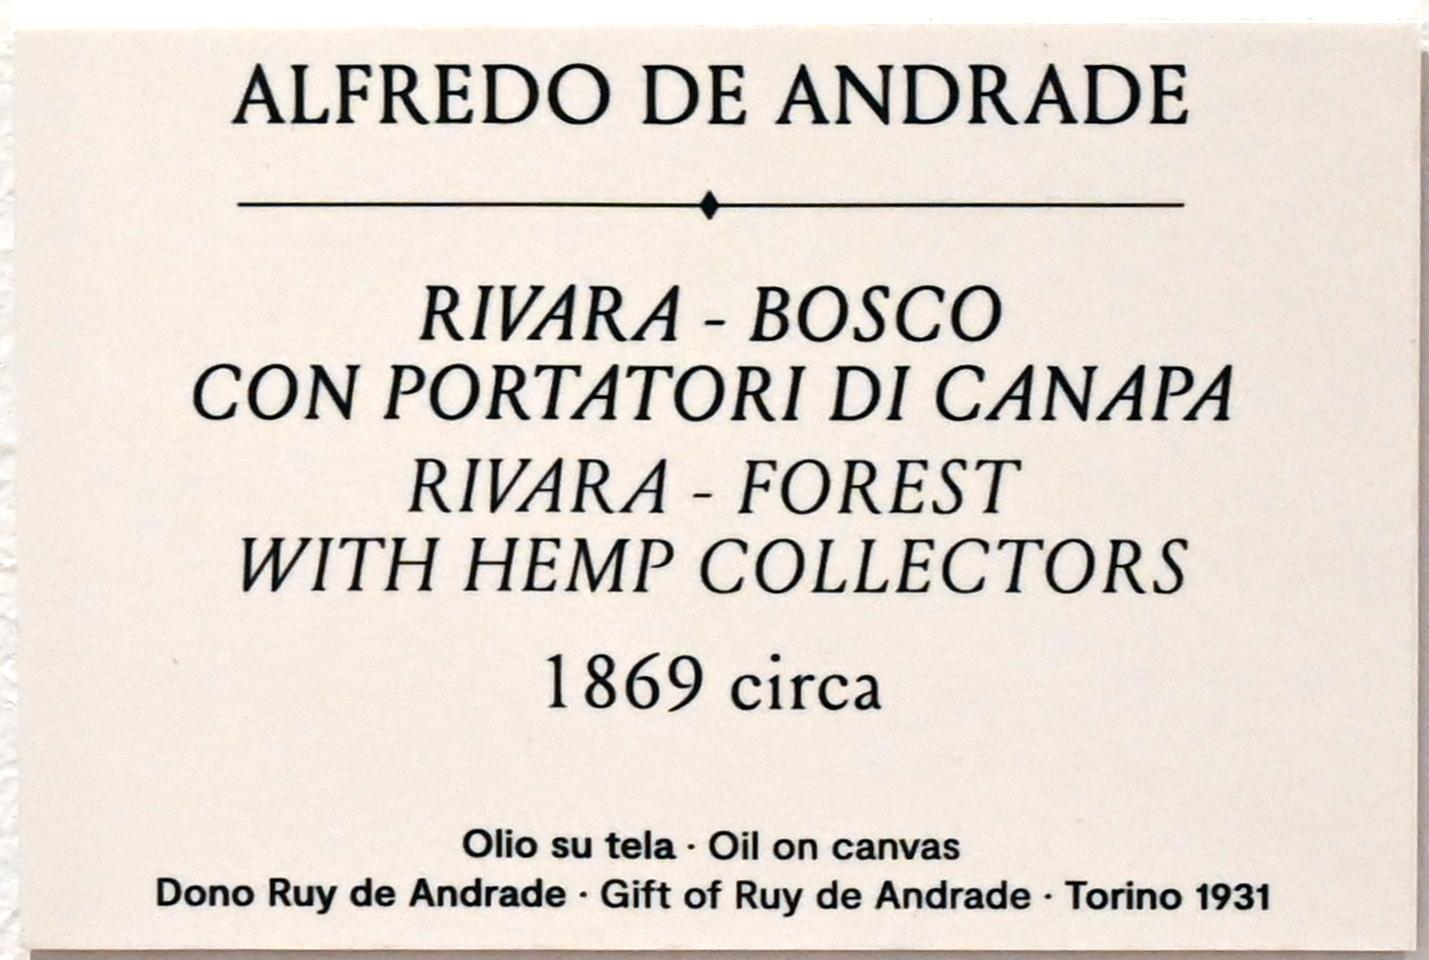 Alfredo d’Andrade (1867–1871), Rivara - Wald mit Hanfsammlern, Turin, GAM Torino, Ausstellung "Natur und Wahrheit" vom 09.07.-17.10.2021, um 1869, Bild 2/2